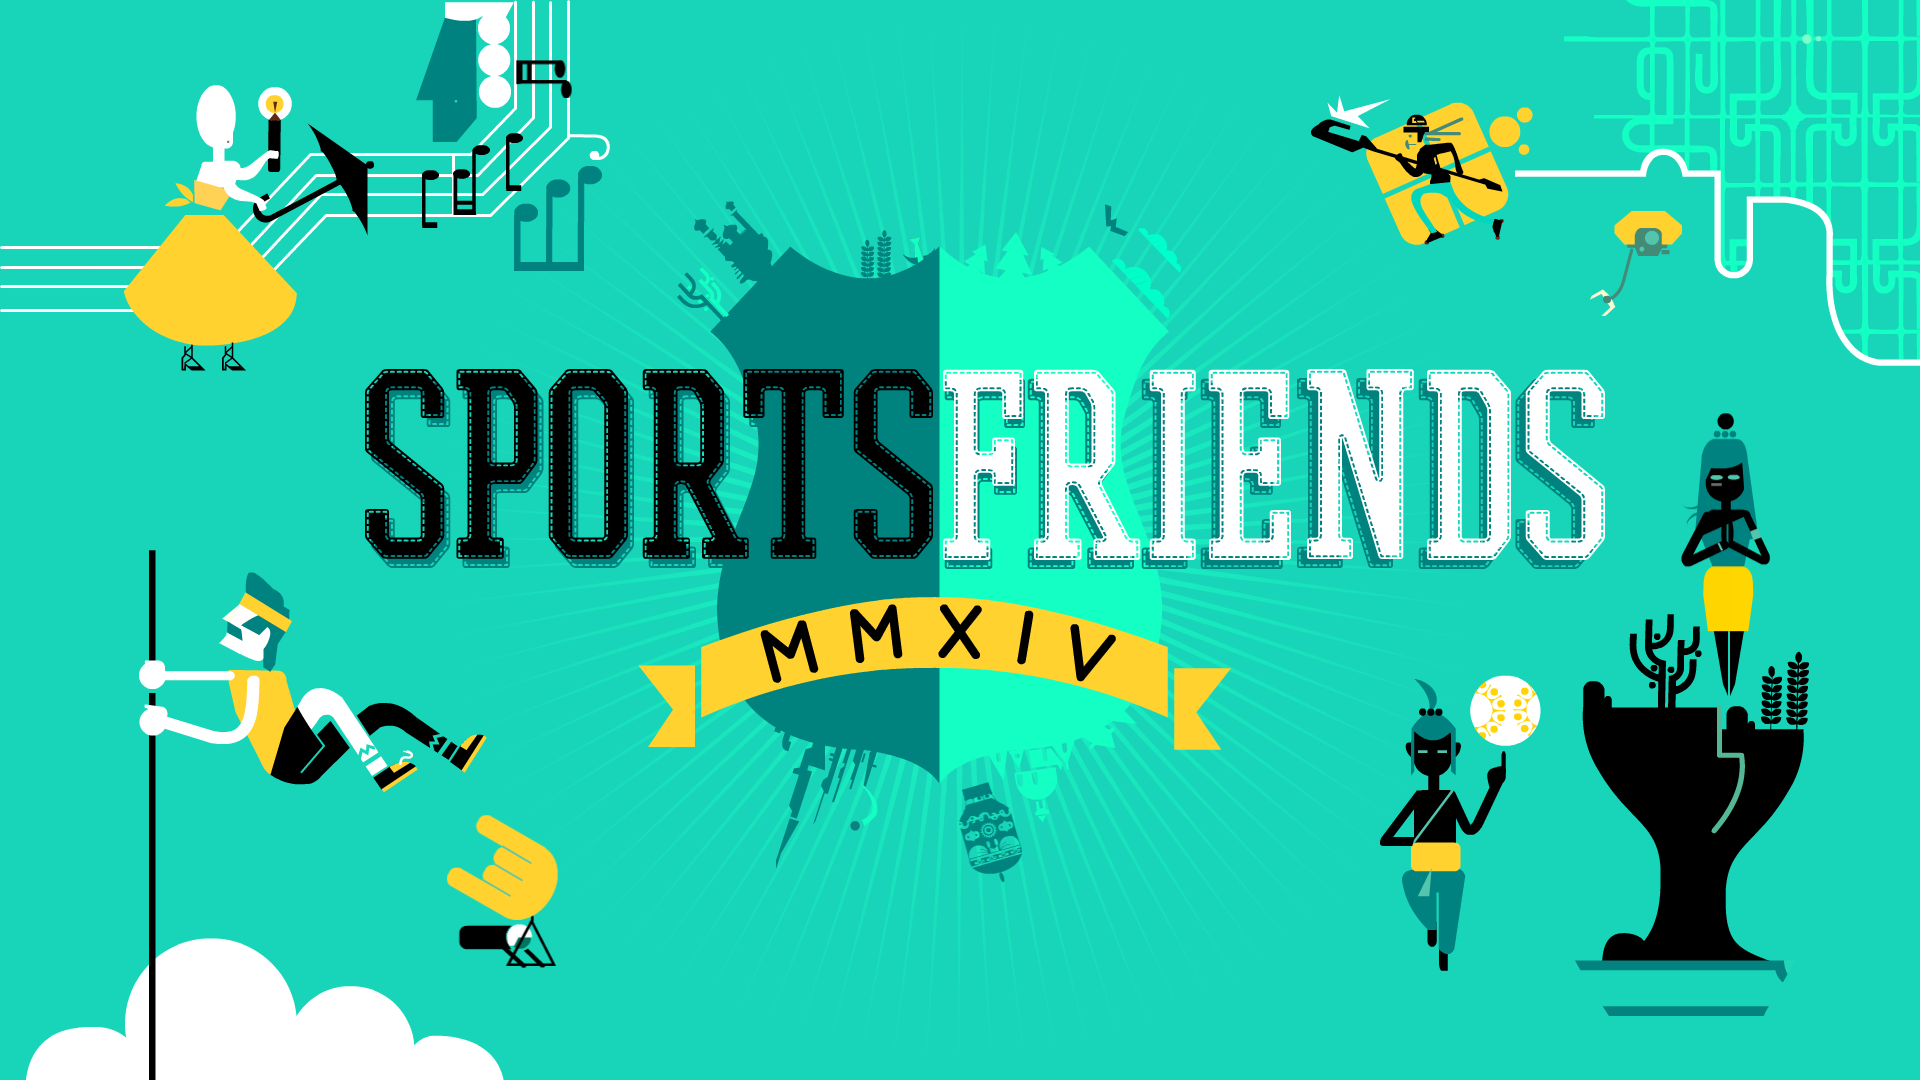 sportsfriends-title